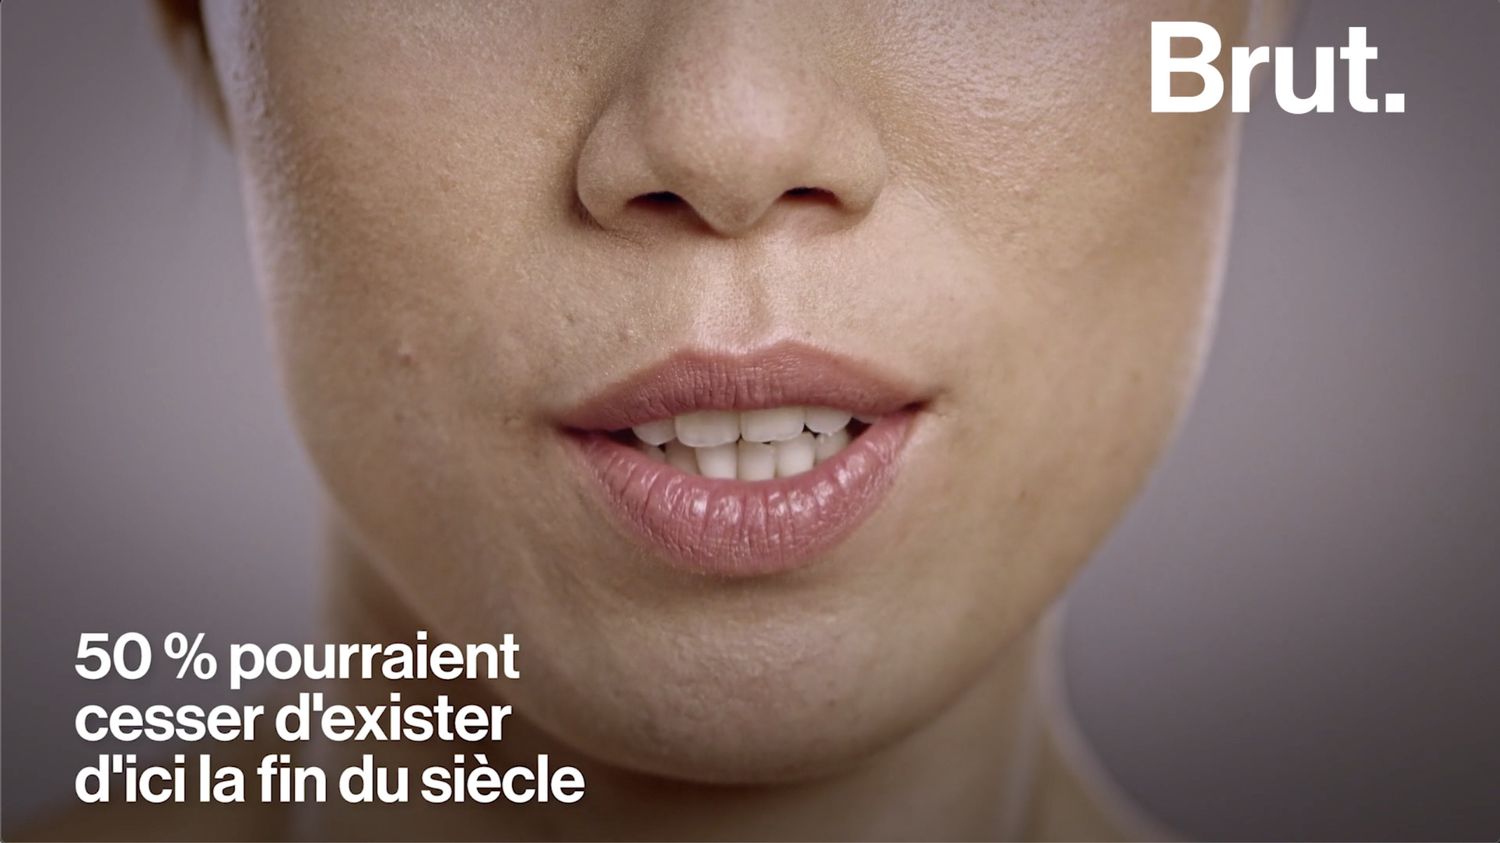 VIDEO. La langue bretonne, une langue en voie de disparition ?